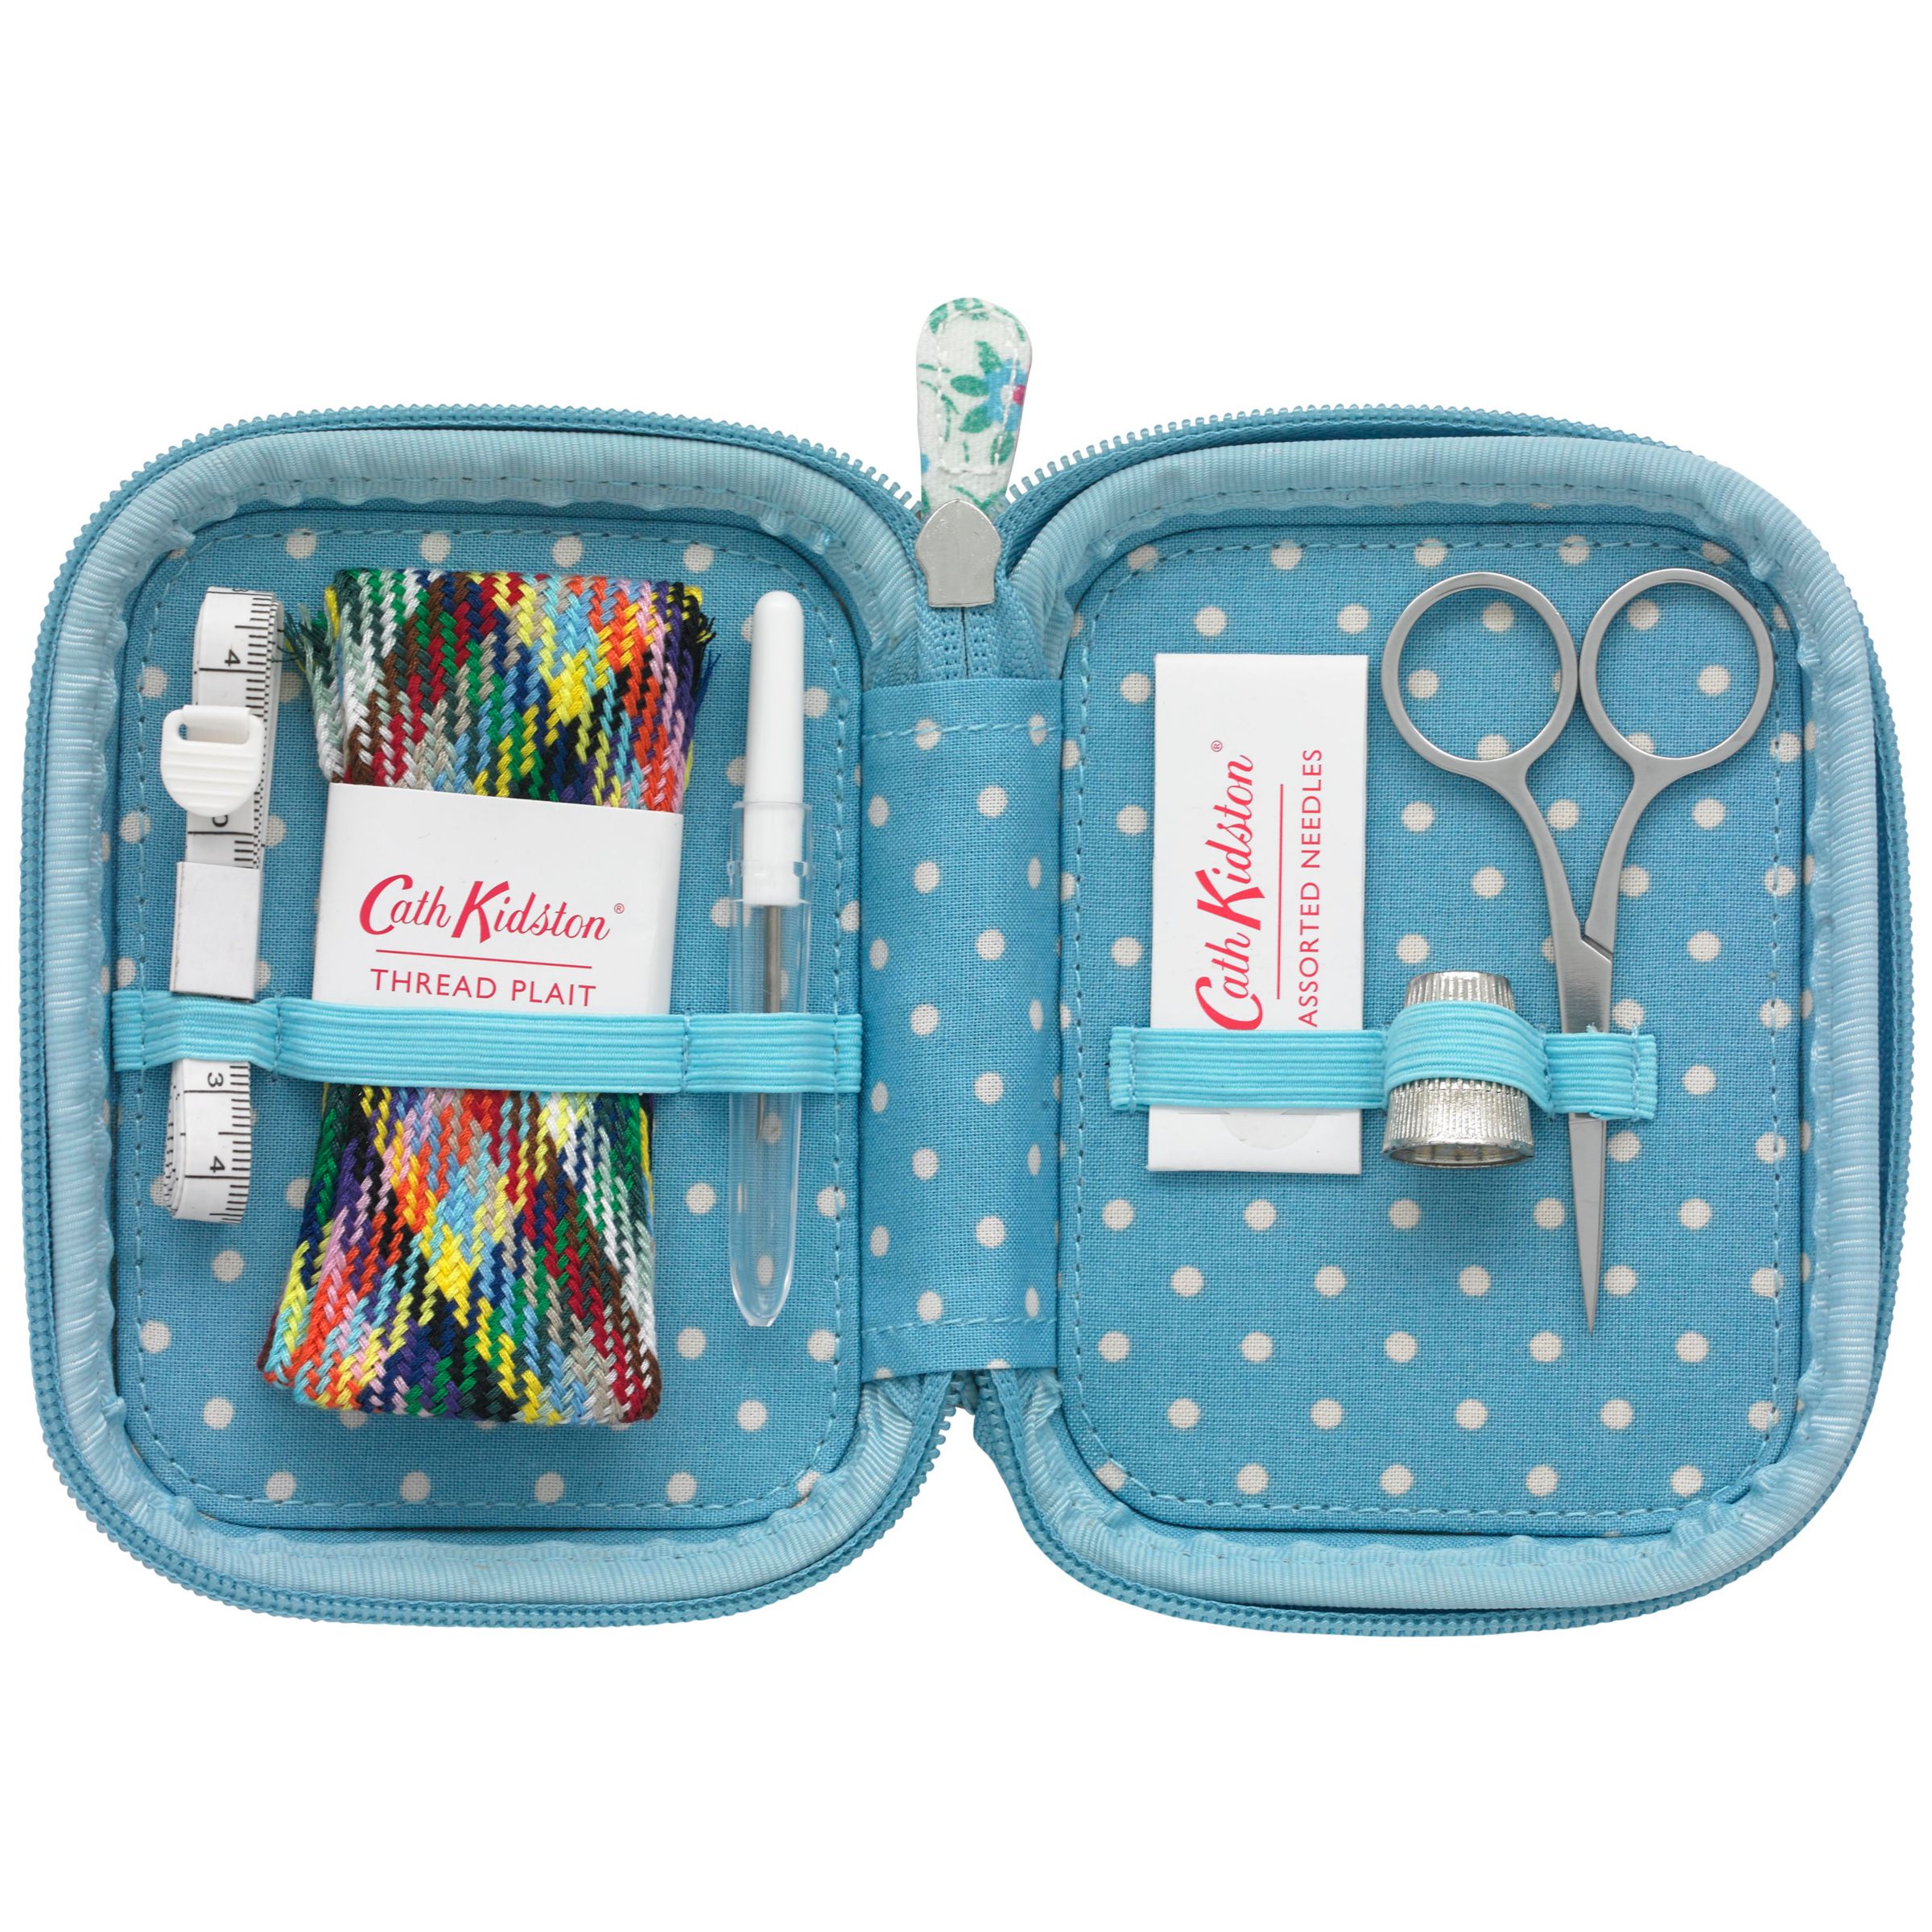 cath kidston travel sewing kit